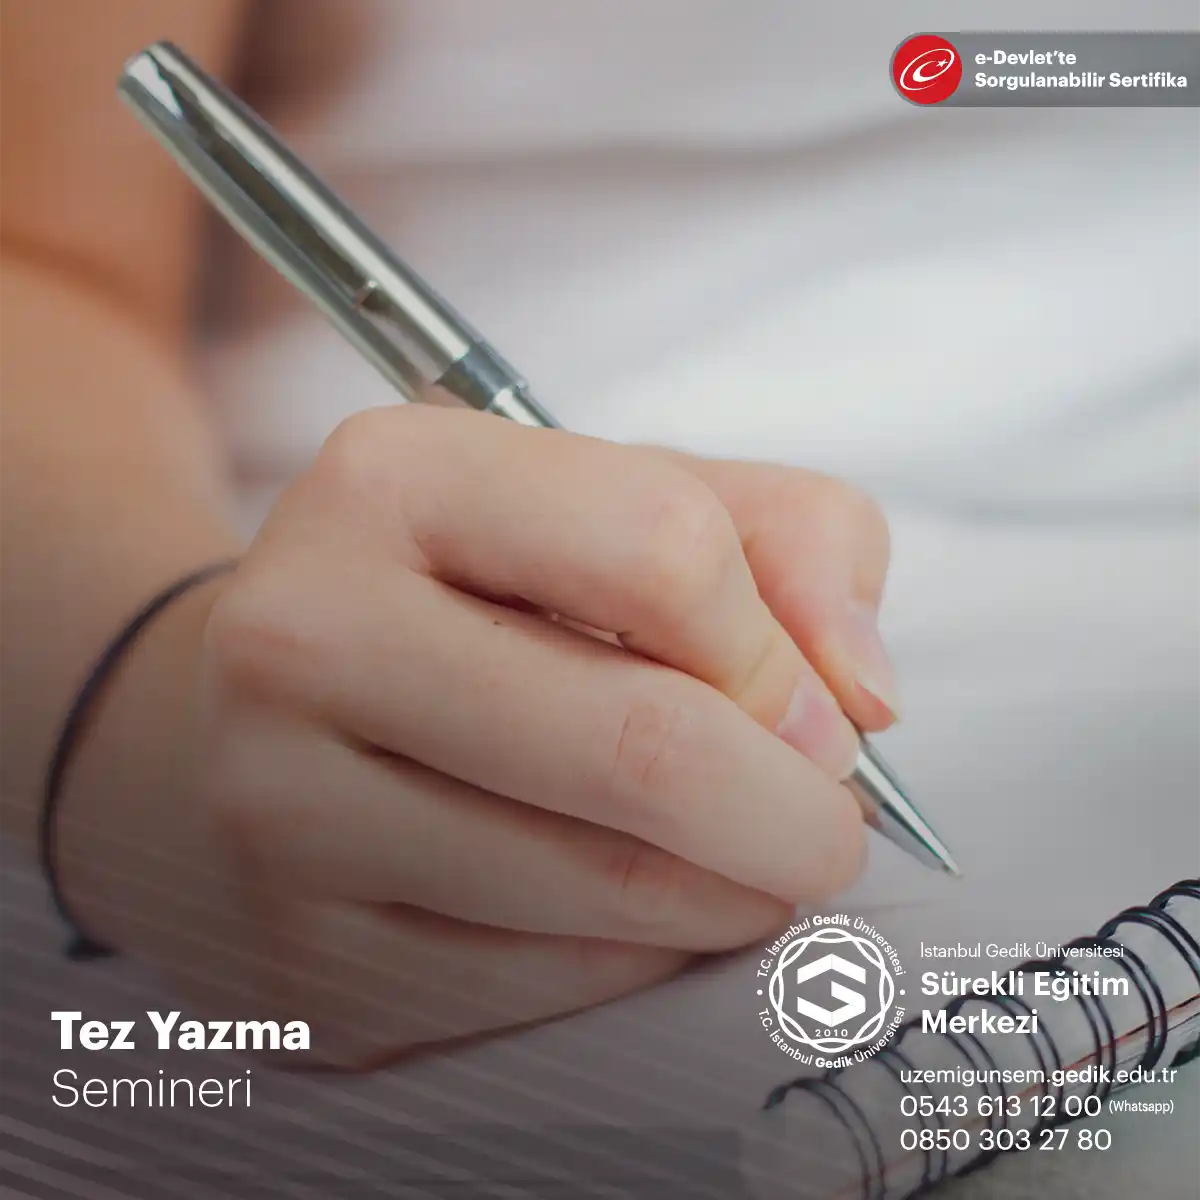 "Tez Yazma" semineri, katılımcılara akademik tezlerin etkili bir şekilde nasıl yazılacağına dair rehberlik eden ve araştırma becerilerini geliştirmelerine yardımcı olan önemli bir eğitim programıdır.